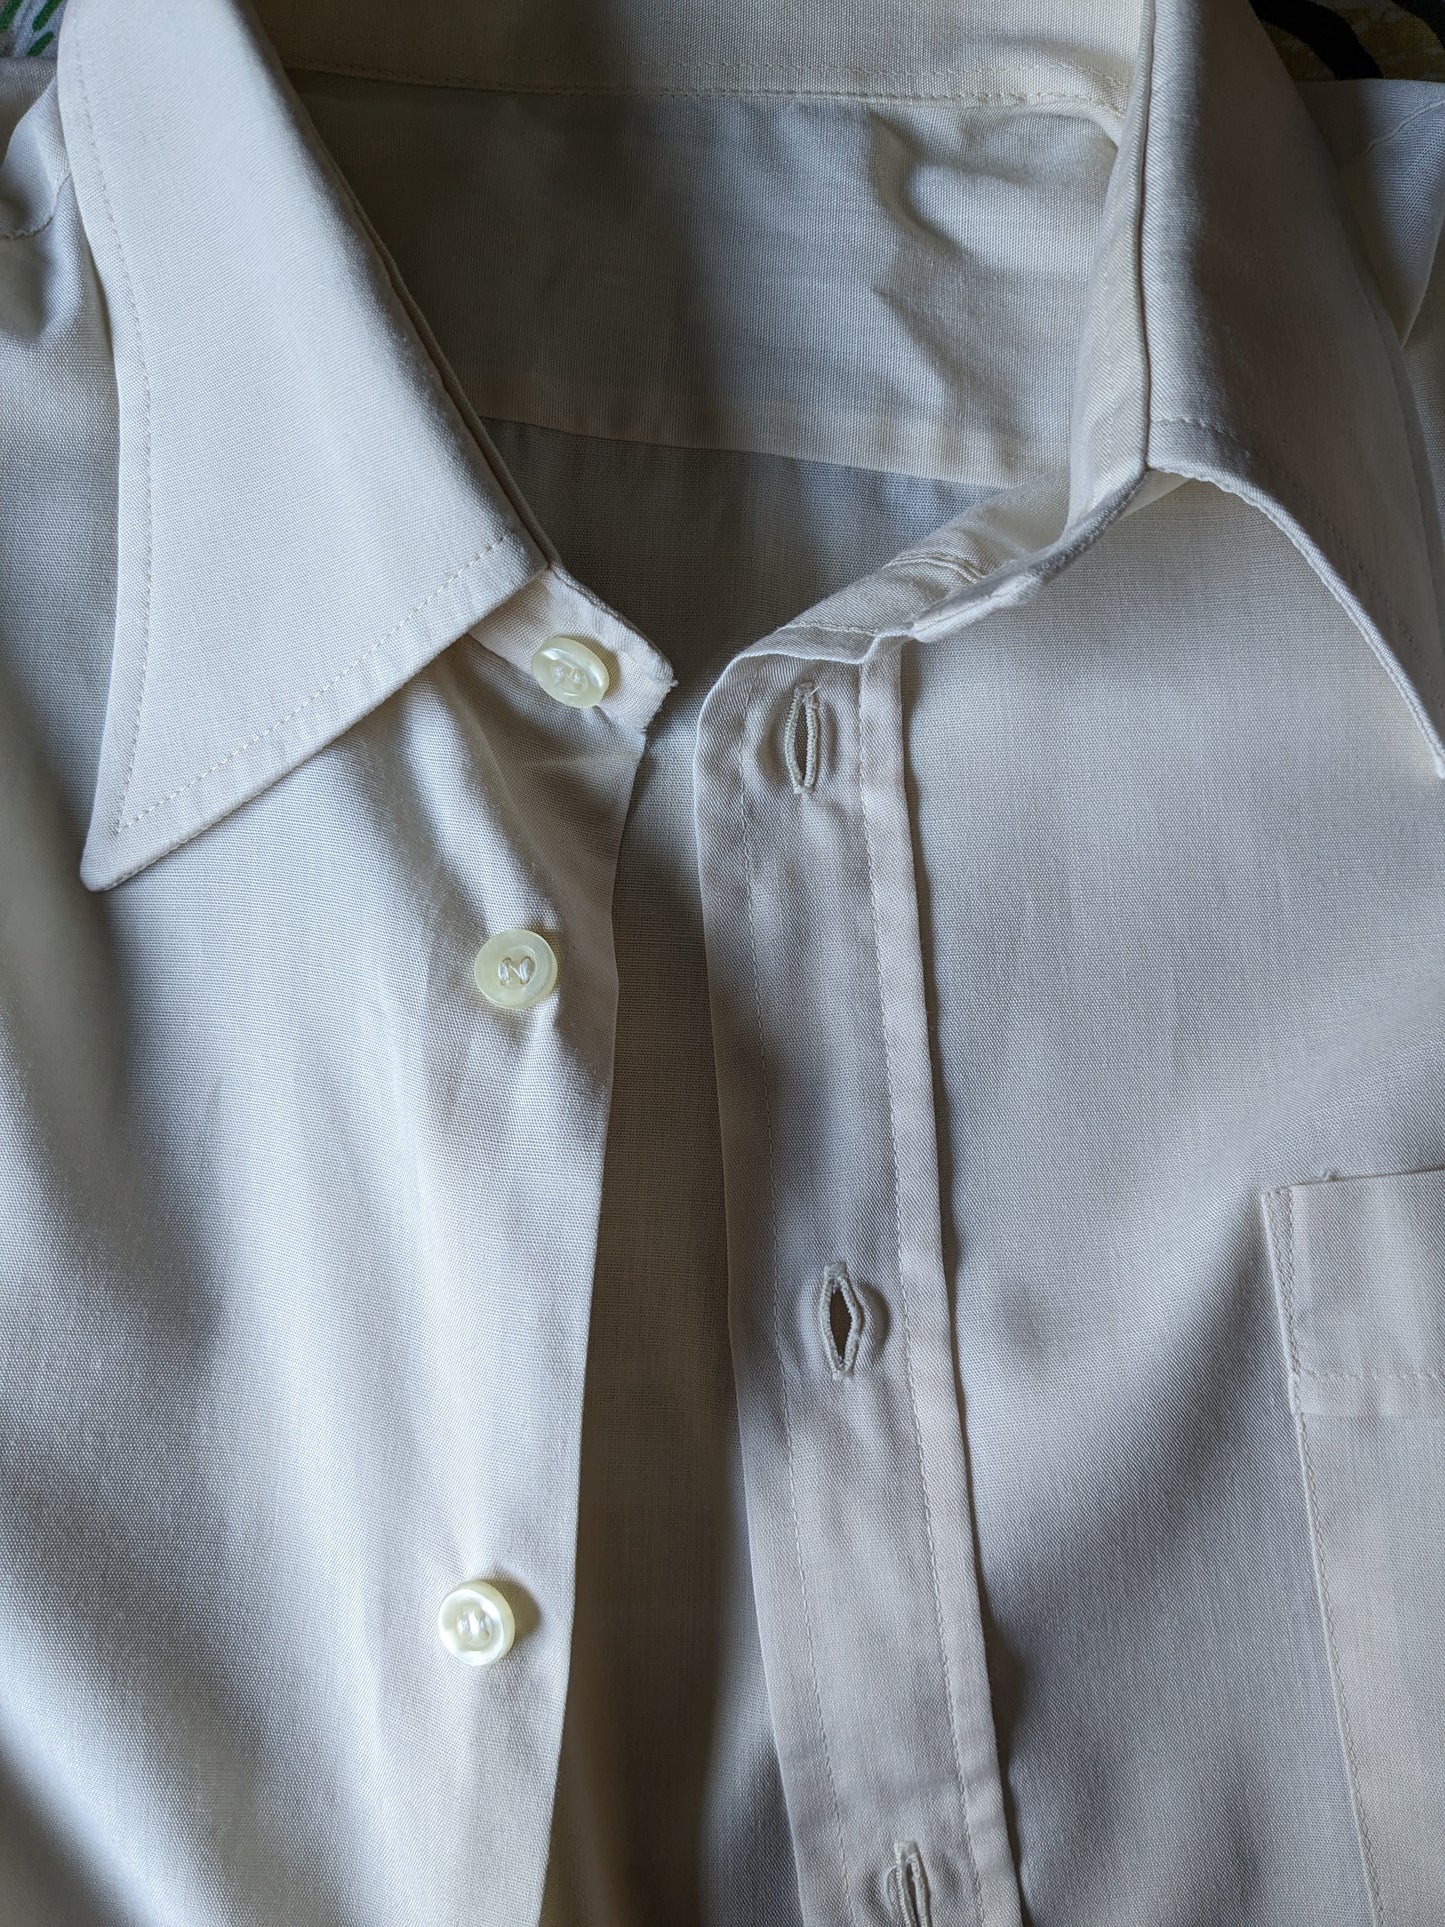 Chemise vintage des années 70 avec collier ponctuel. Coloré beige. Taille xl.